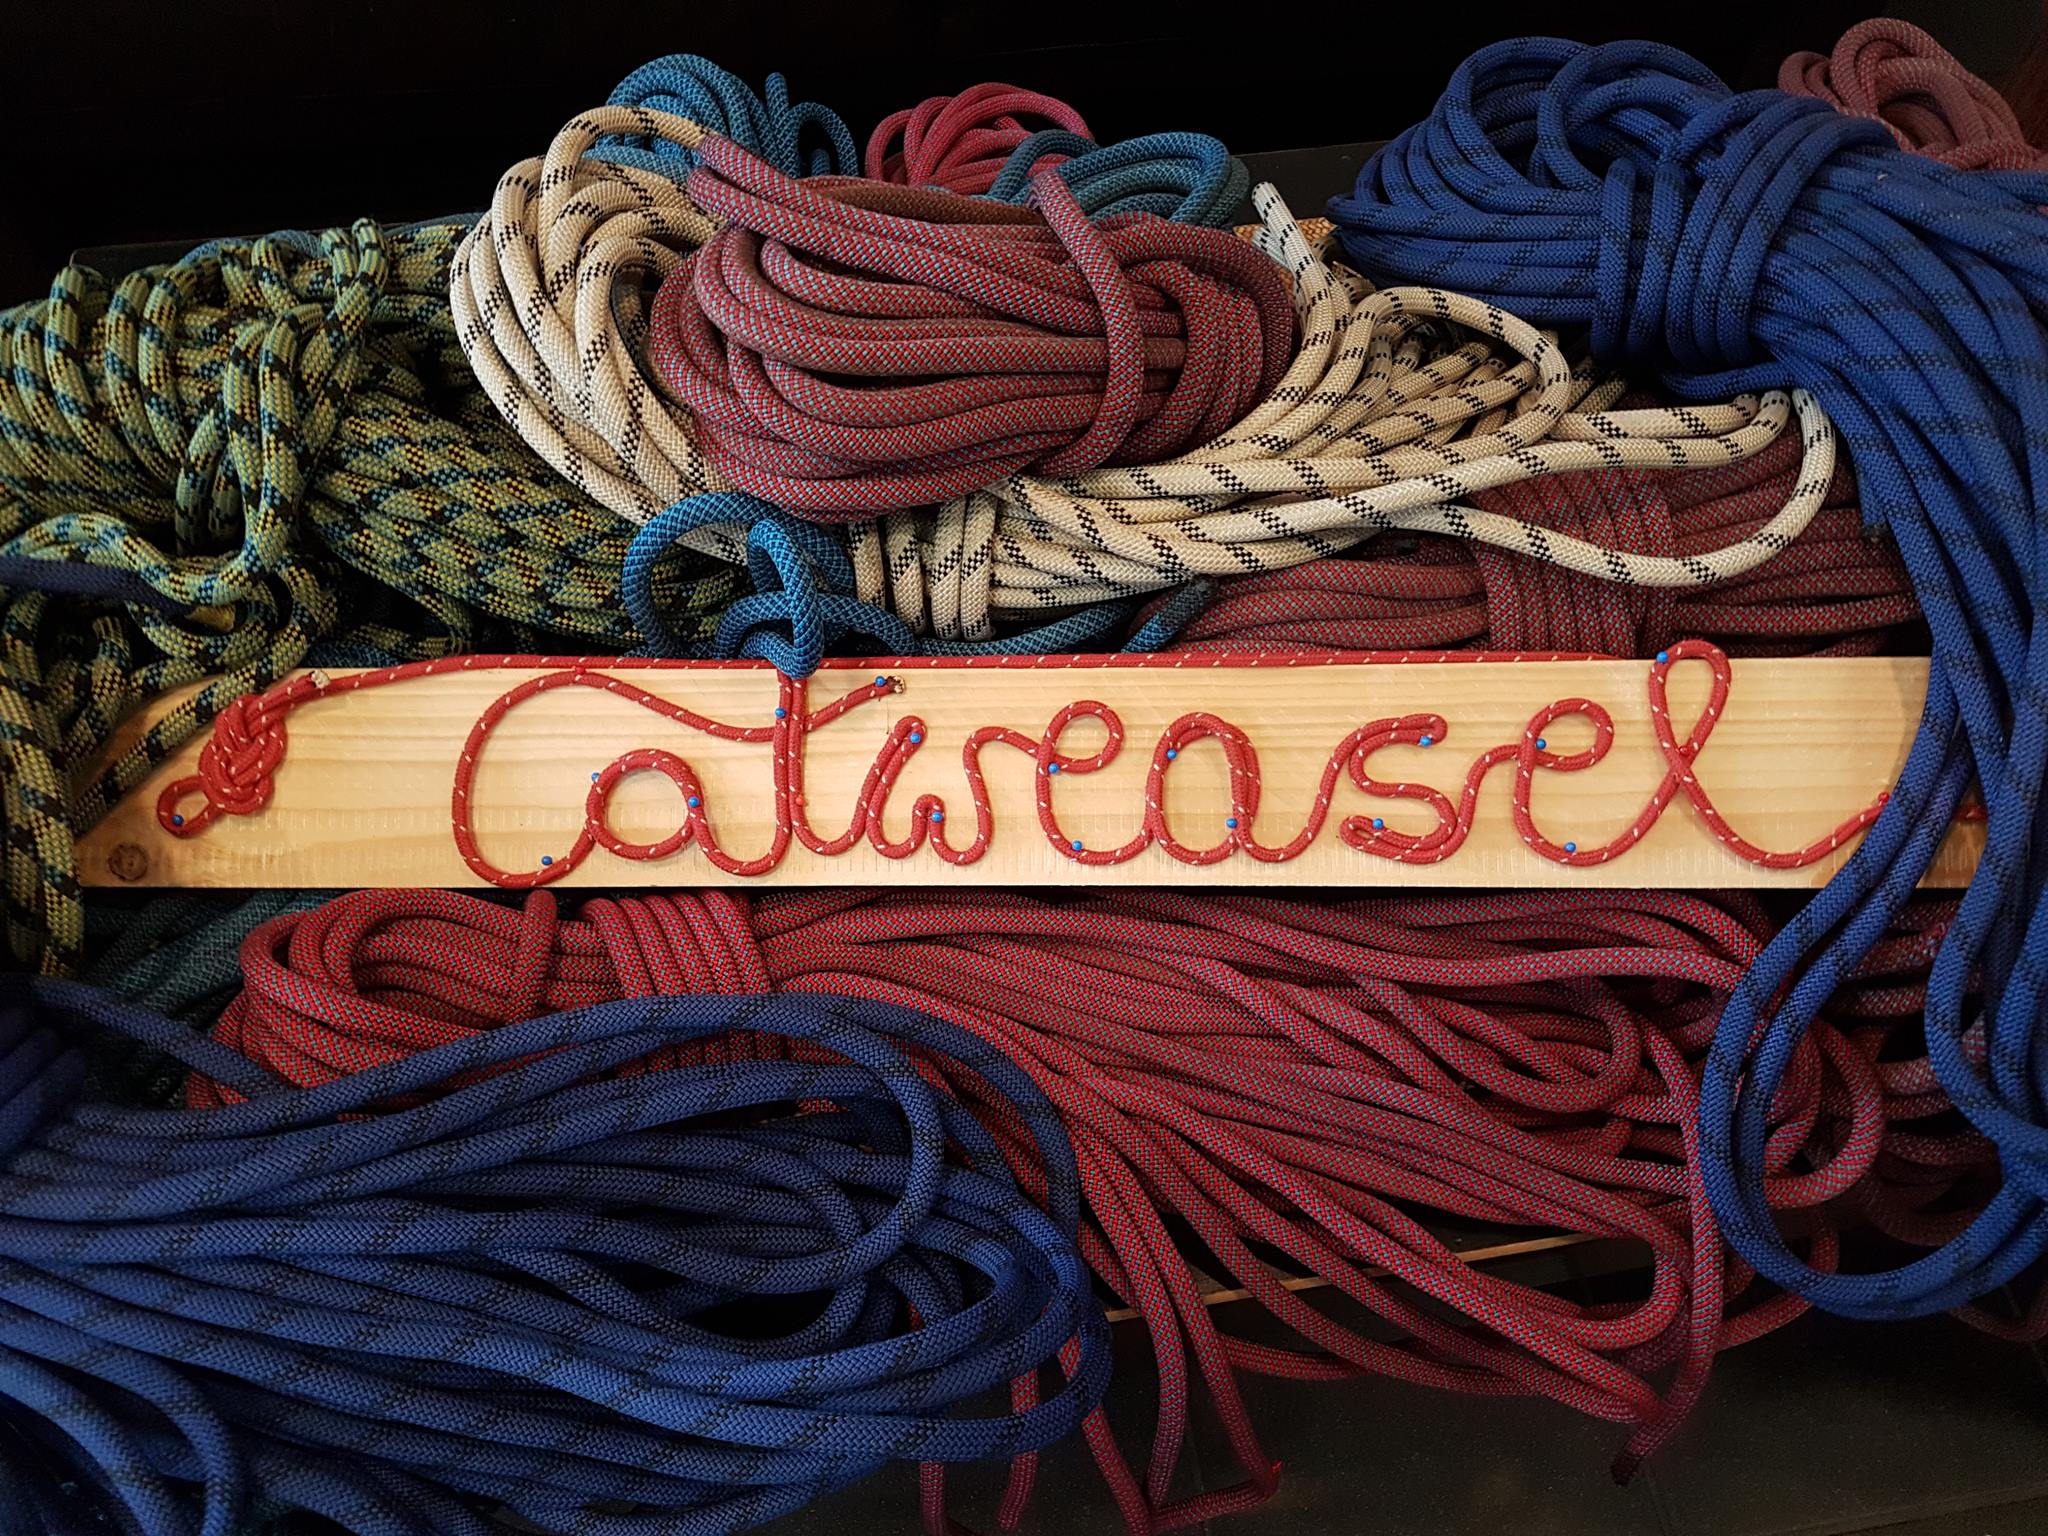 Catweasel logo-seil